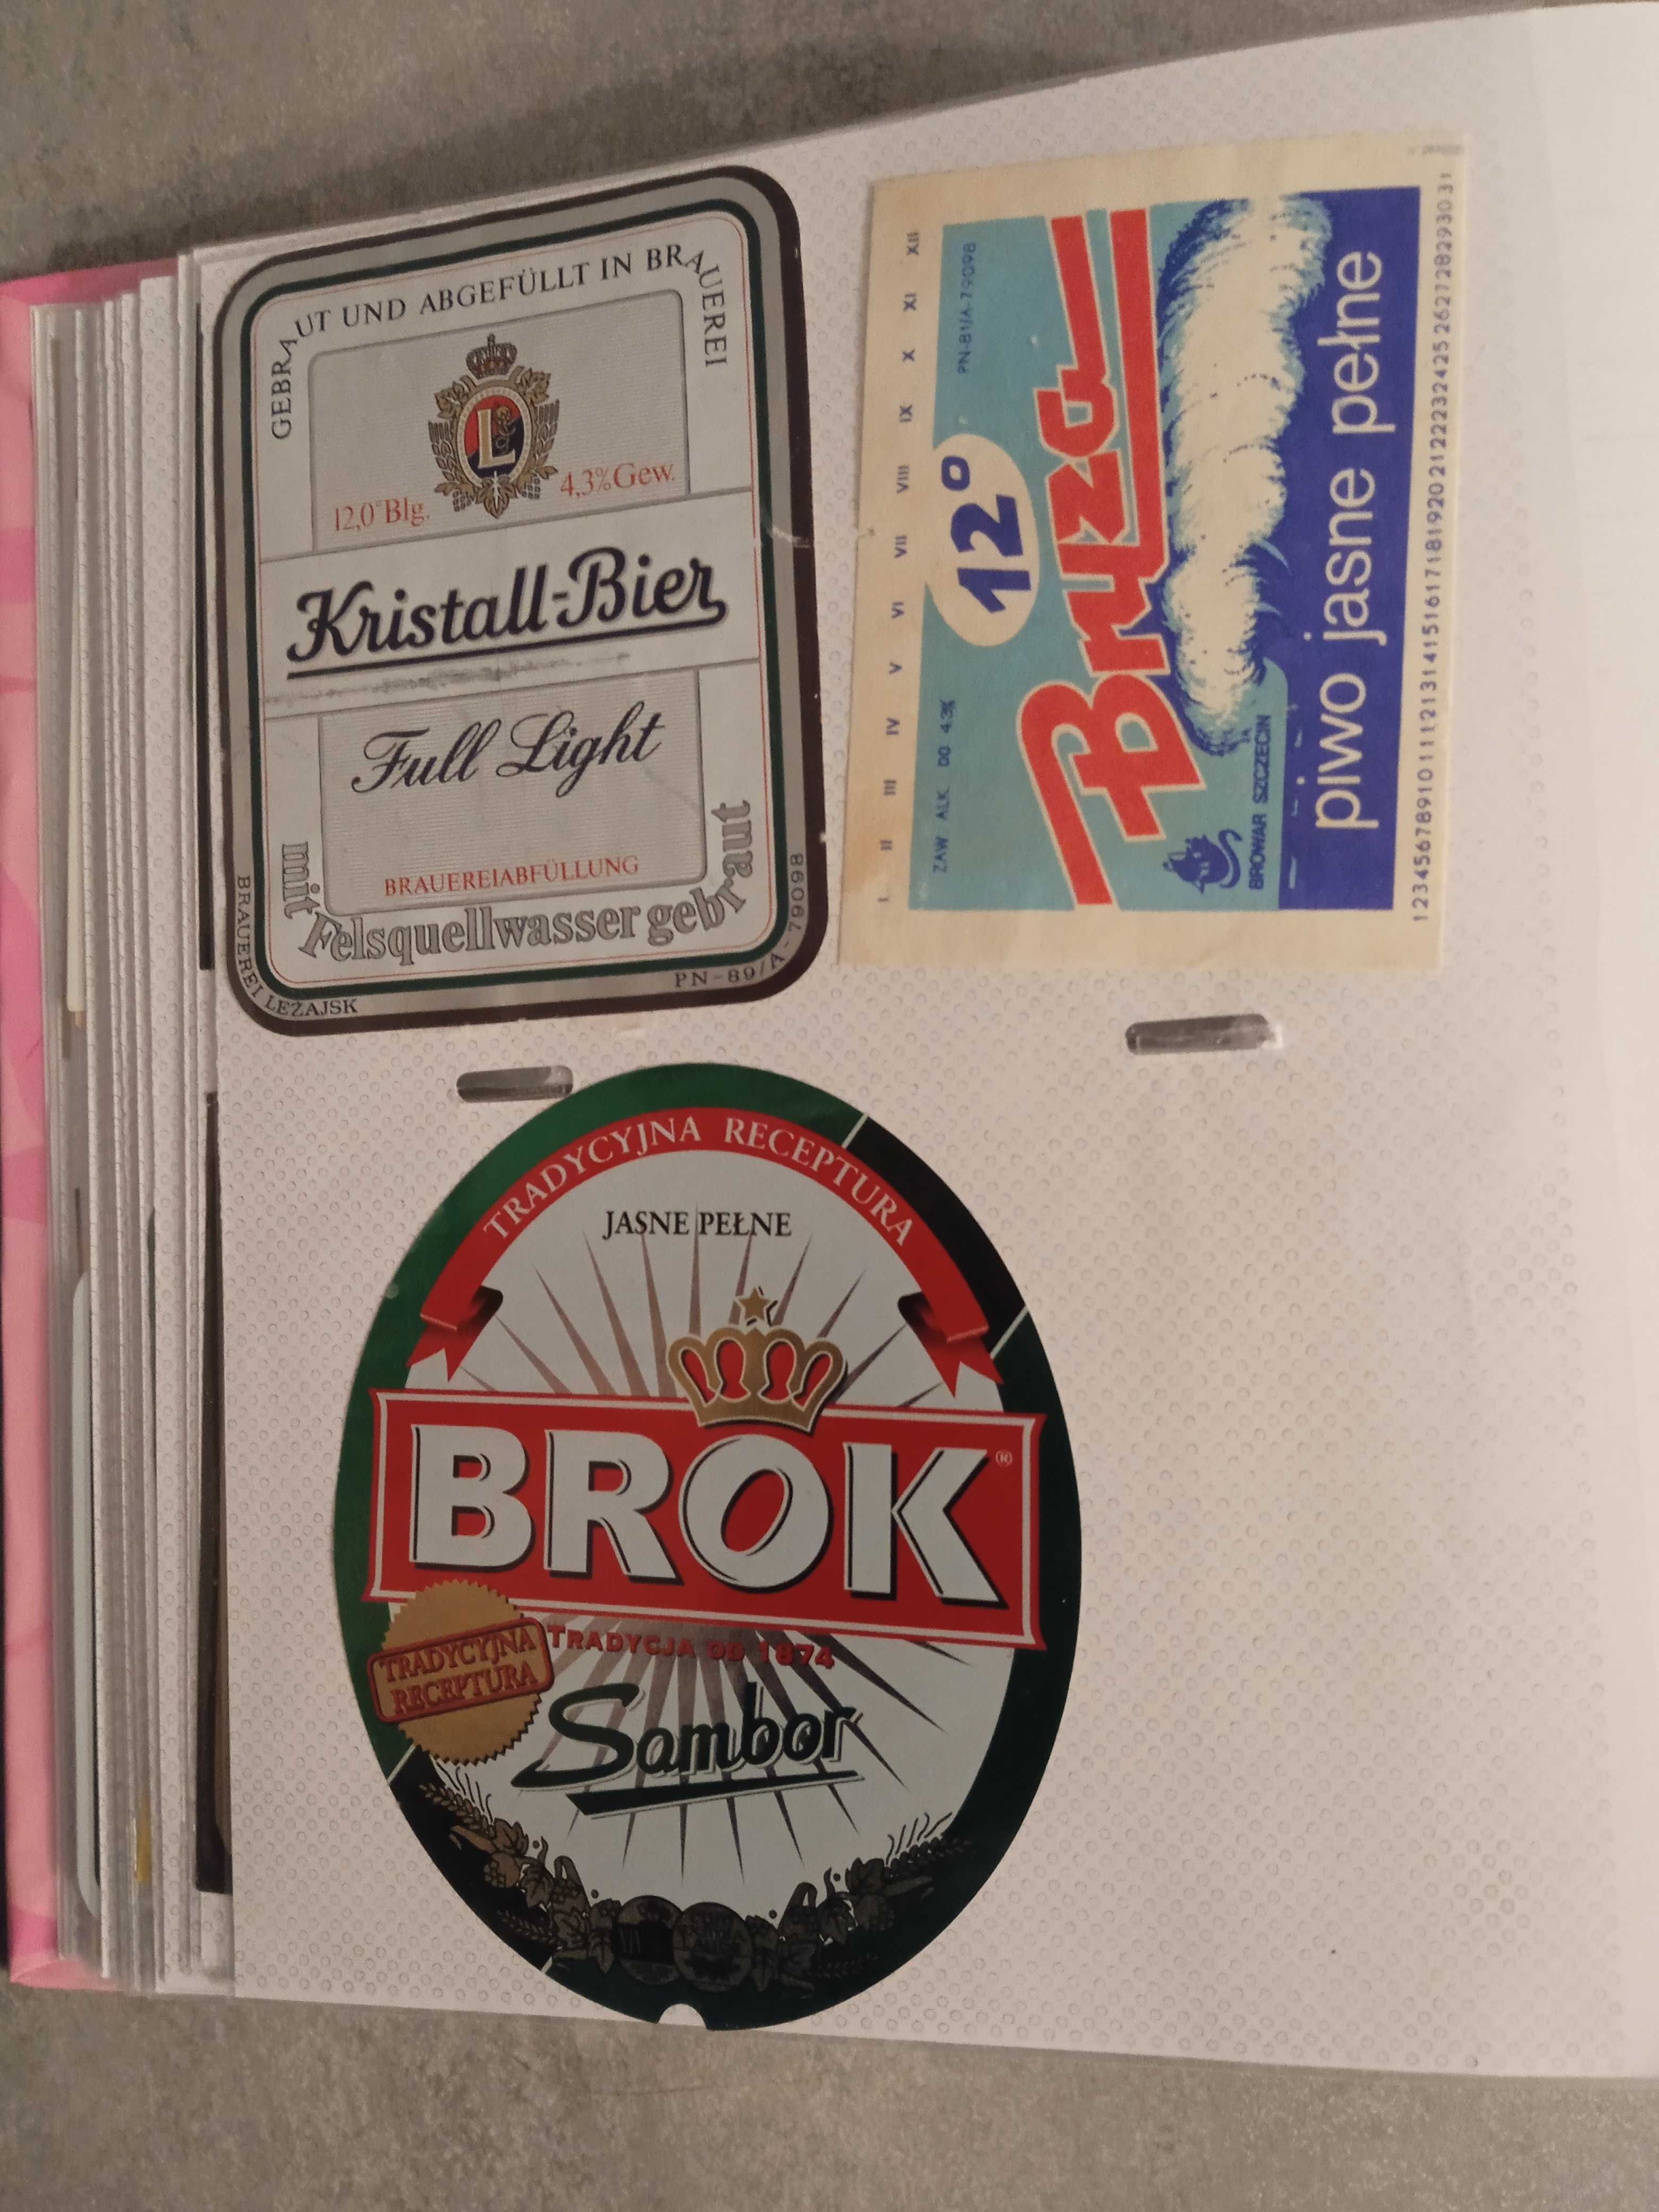 Etykiety 2 od piwo polskie , zagraniczne  ,piwne  niepiwne , krawatki